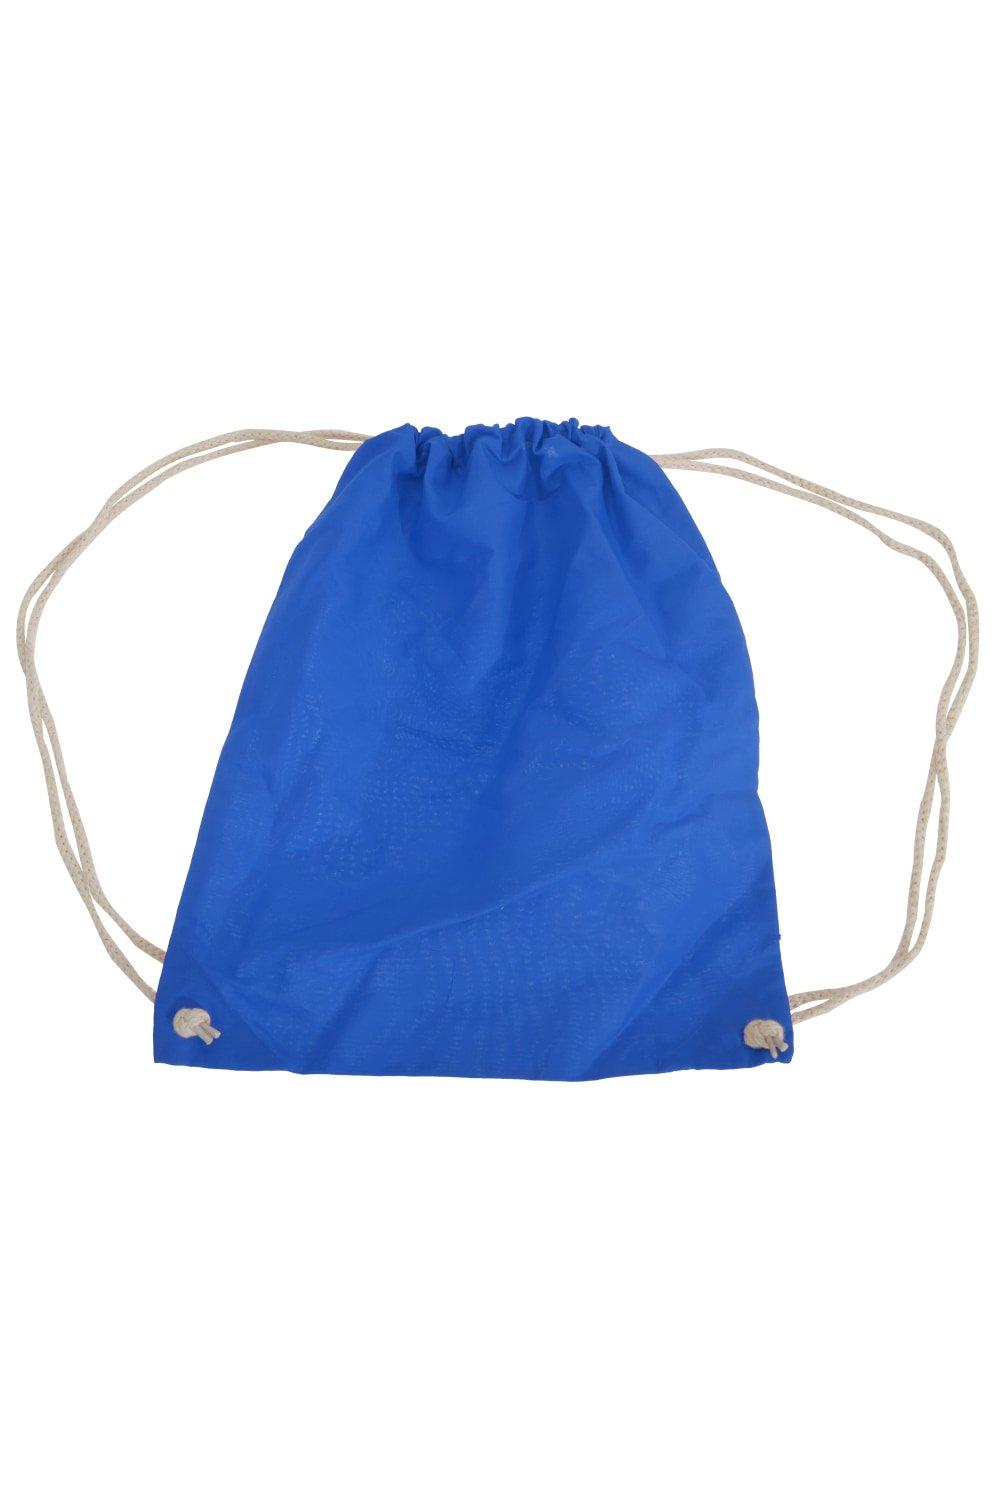 Хлопковая сумка Gymsac - 12 литров (2 шт. в упаковке) Westford Mill, синий